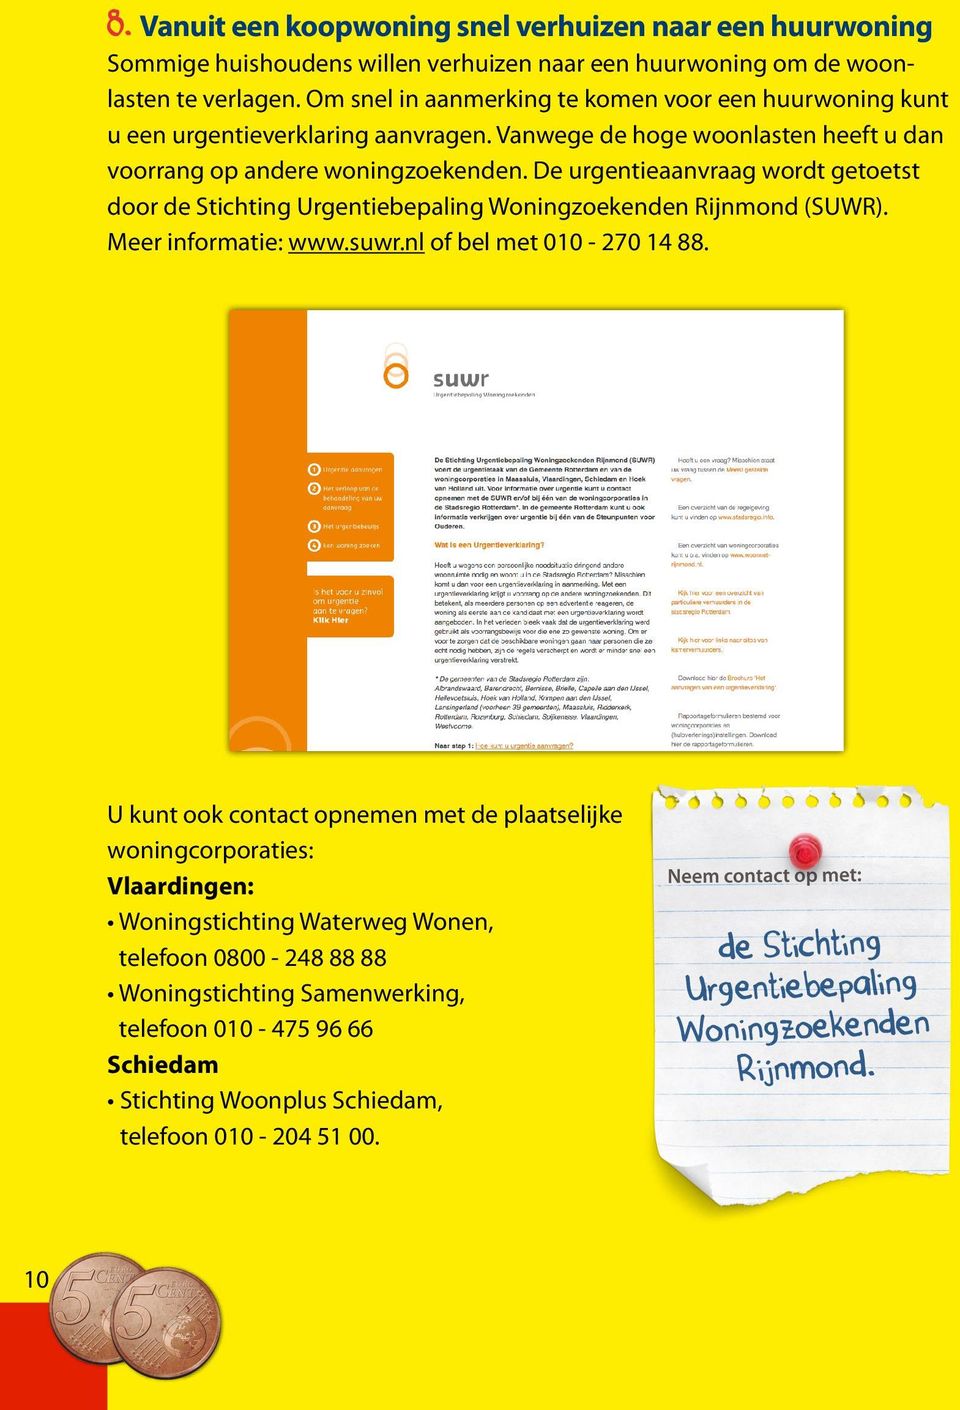 De urgentieaanvraag wordt getoetst door de Stichting Urgentiebepaling Woningzoekenden Rijnmond (SUWR). Meer informatie: www.suwr.nl of bel met 010-270 14 88.